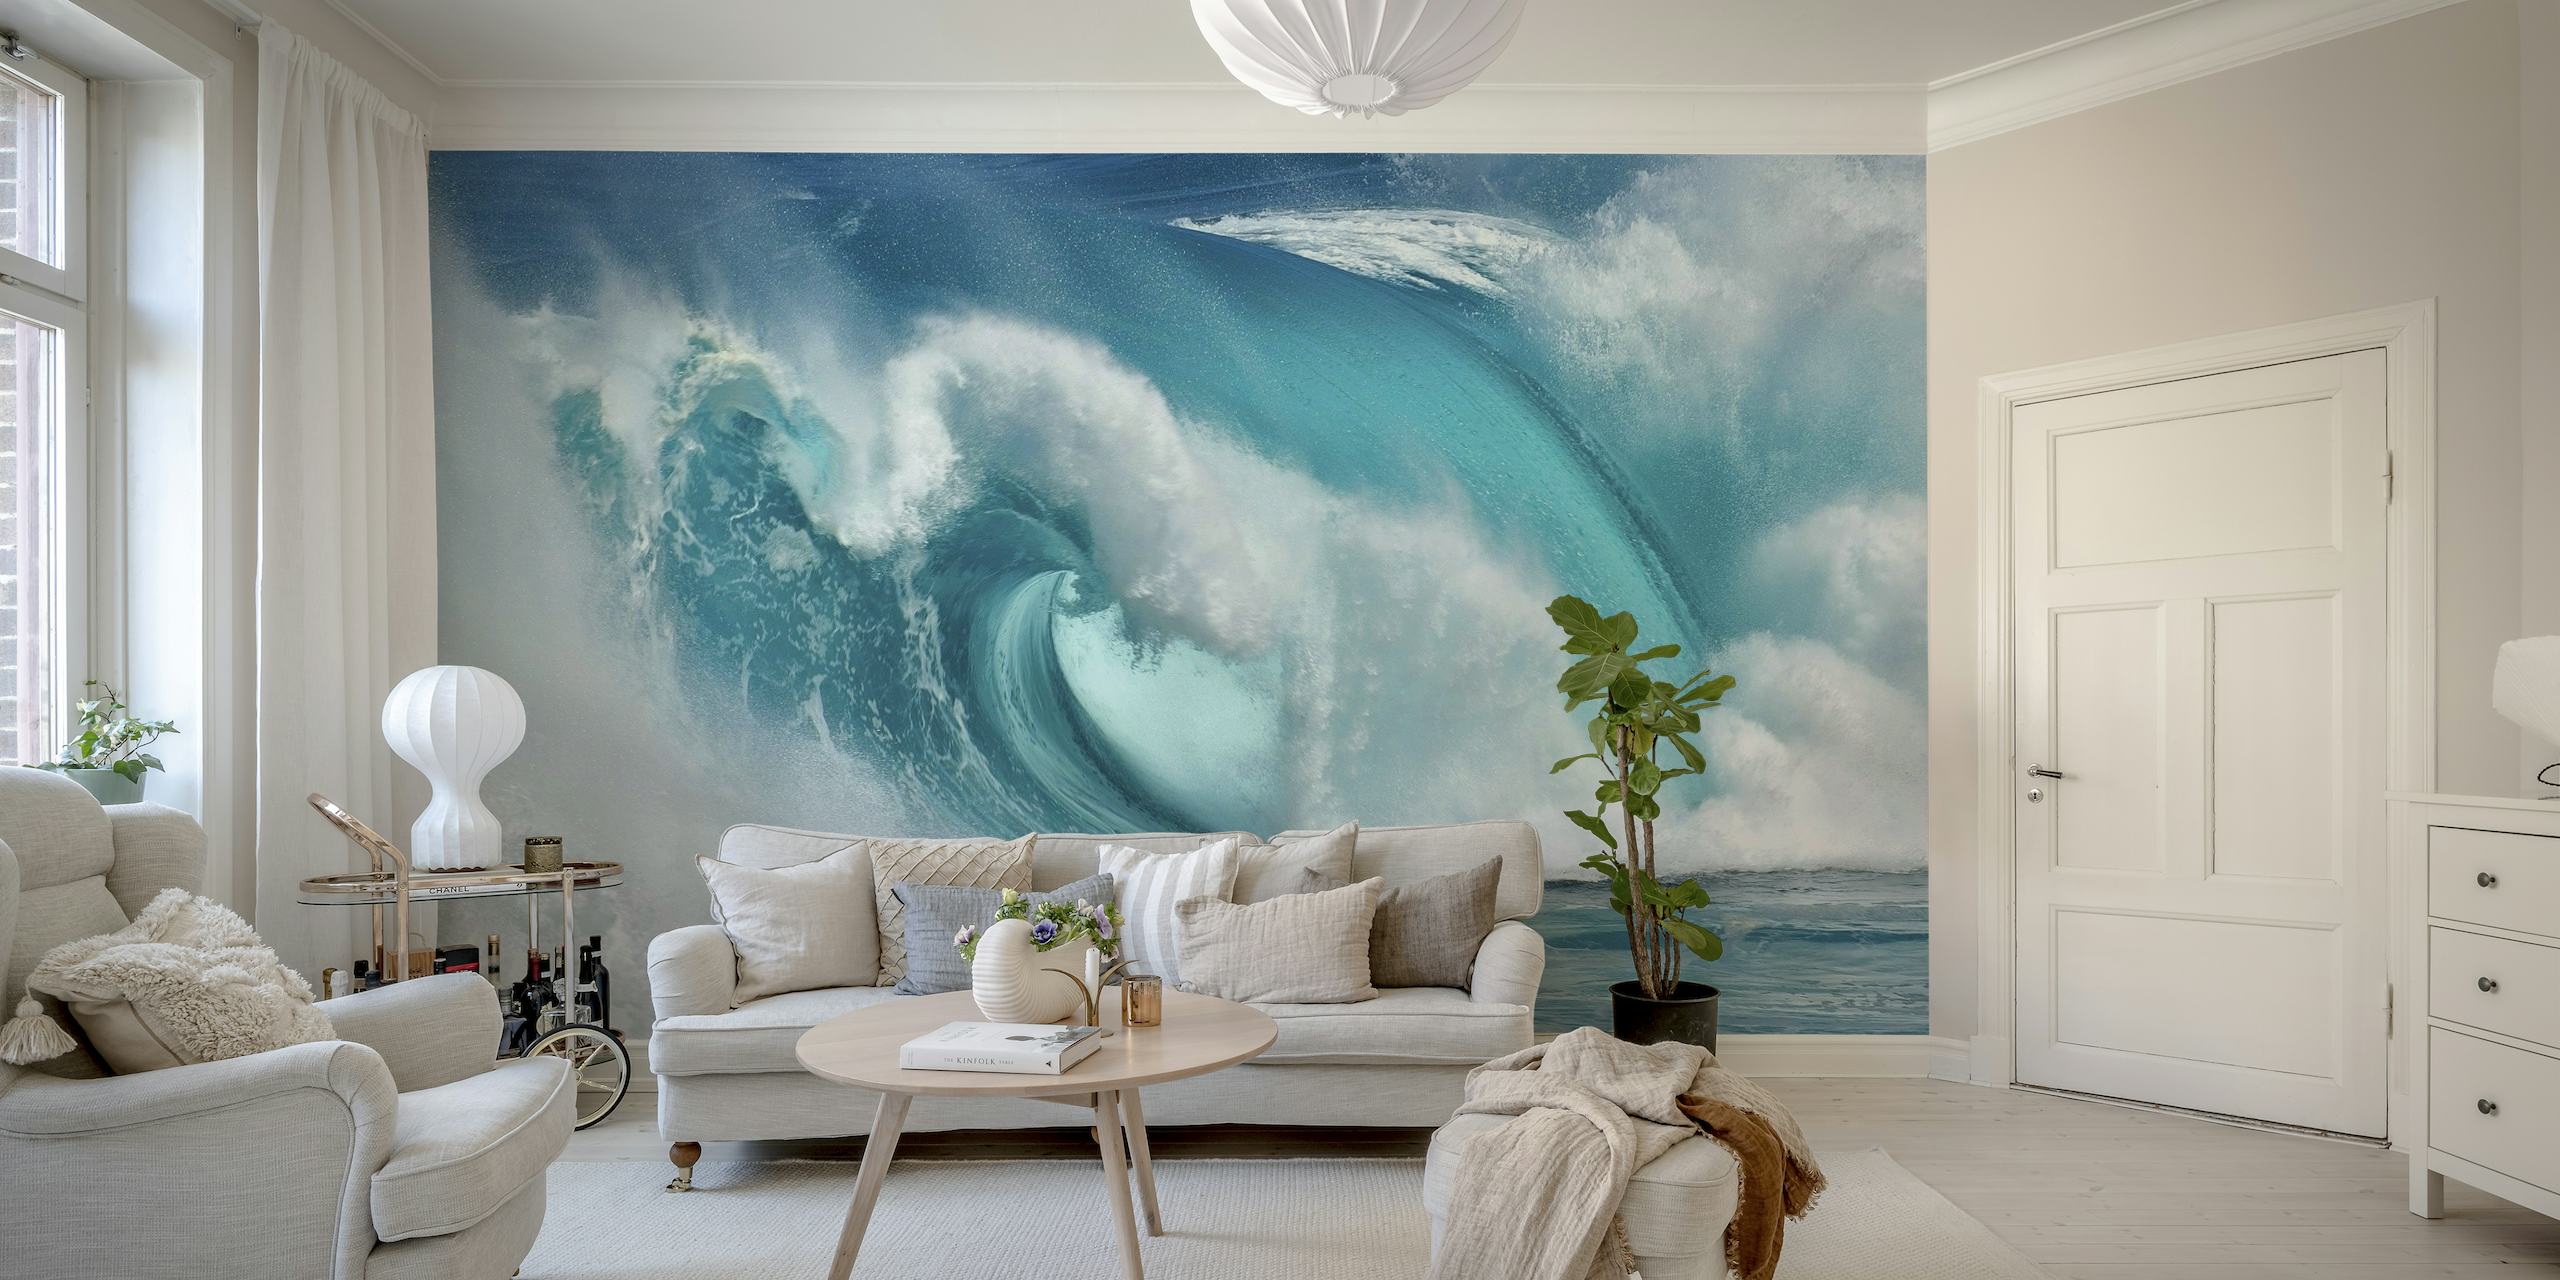 Peinture murale abstraite de vagues océaniques avec effet de feu bleu